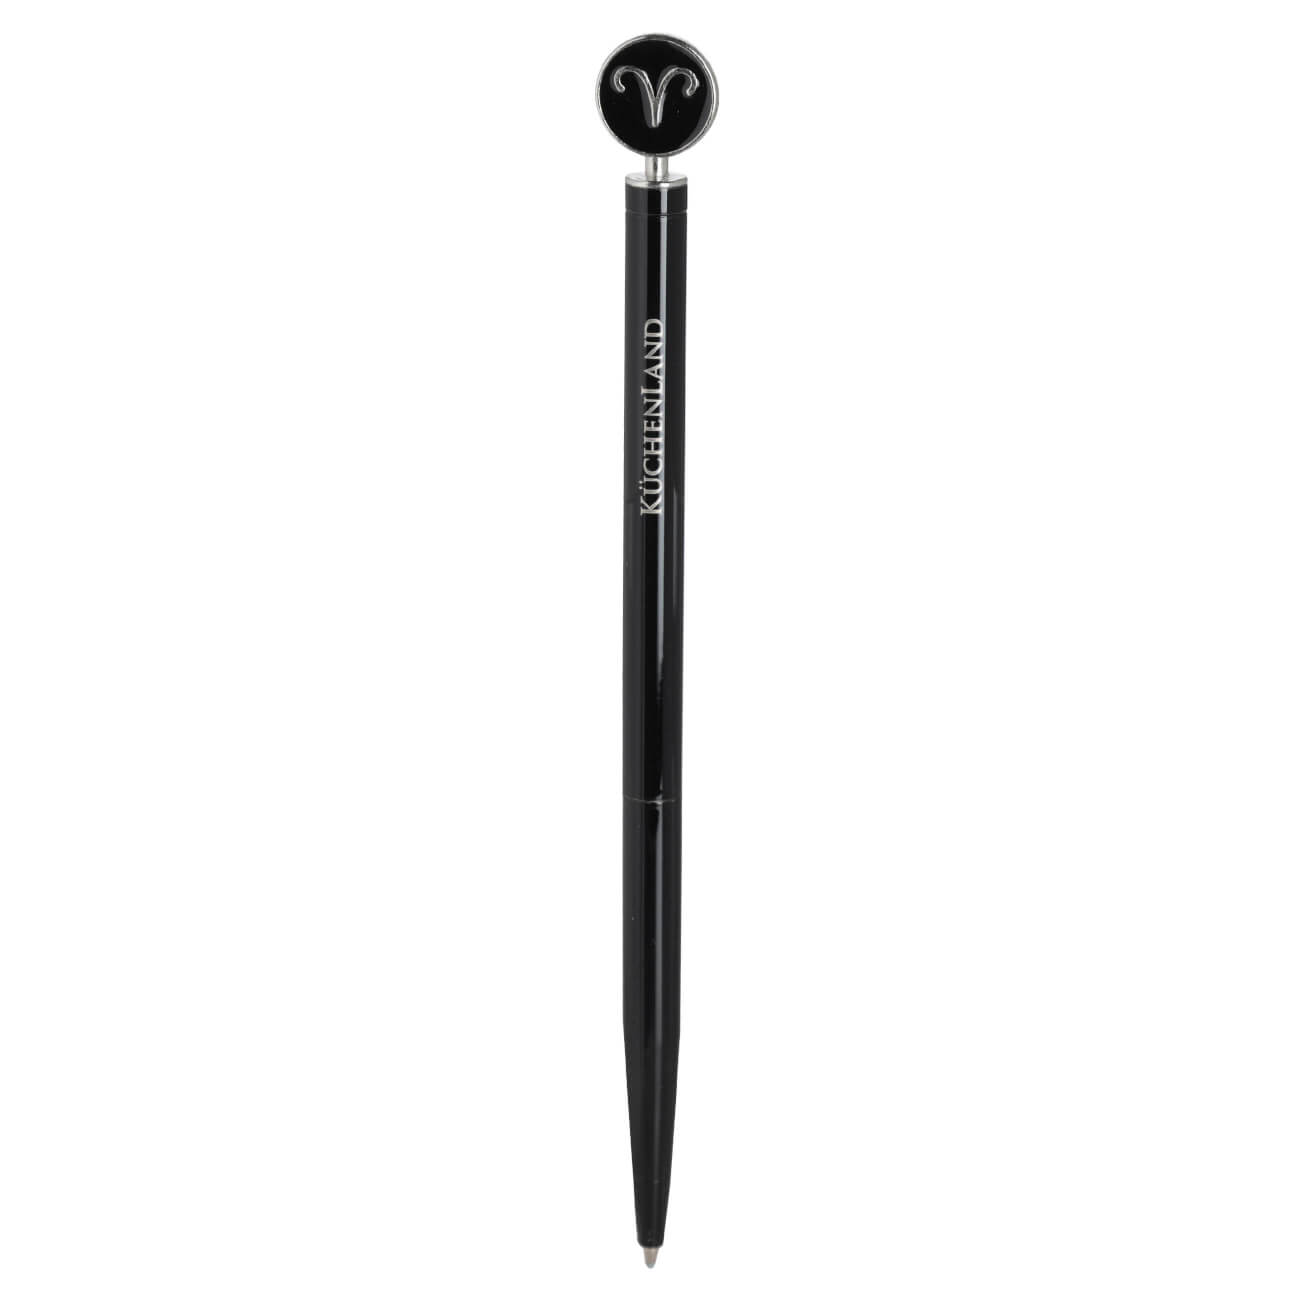 Ручка шариковая, 15 см, с фигуркой, сталь, черно-серебристая, Овен, Zodiac